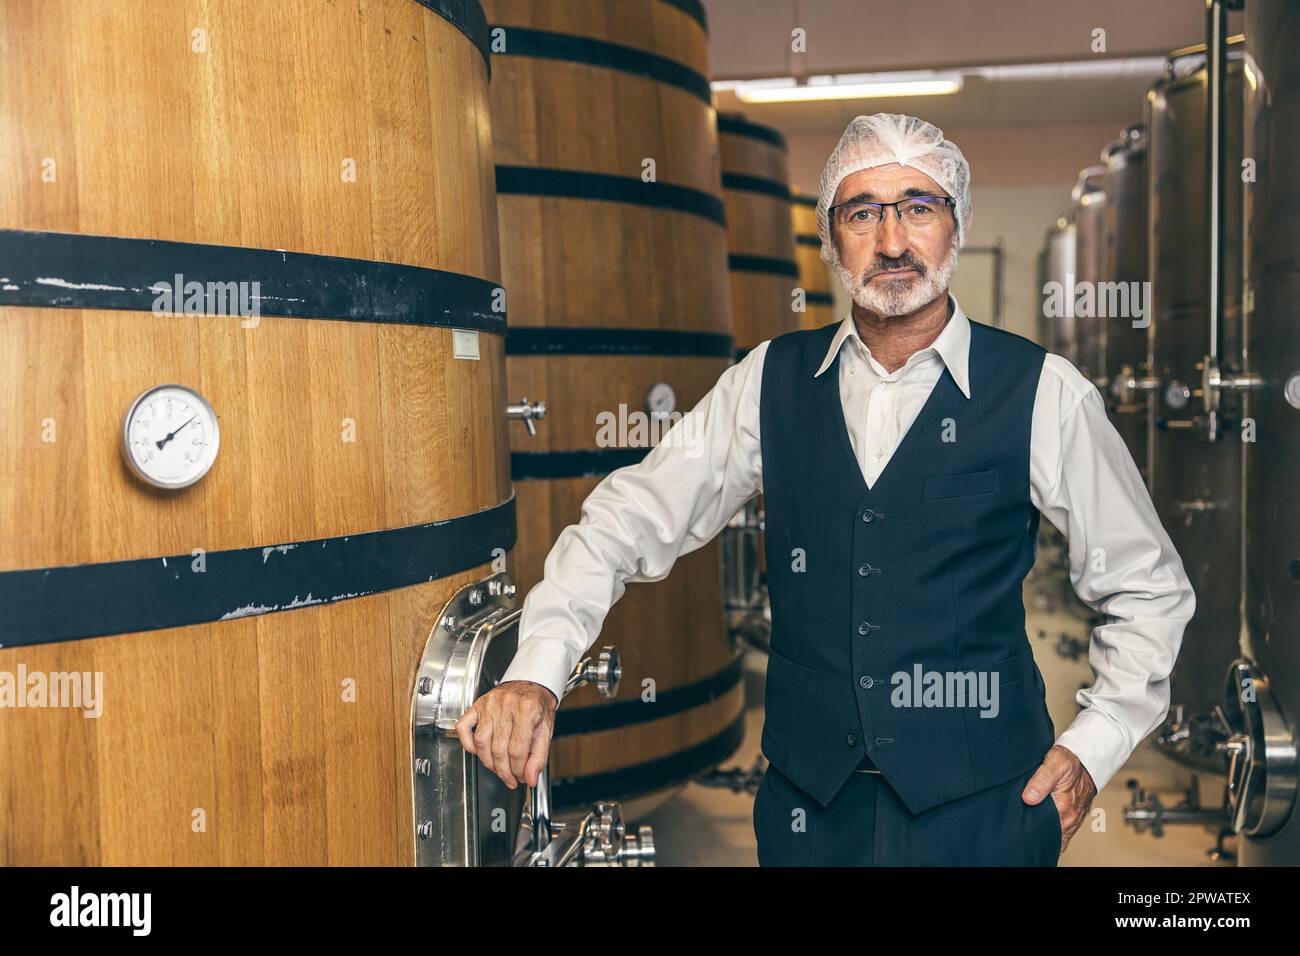 portrait professionnel vin expert personnel senior travailleur travail contrôle qualité dans l'usine de cave de vinification Banque D'Images